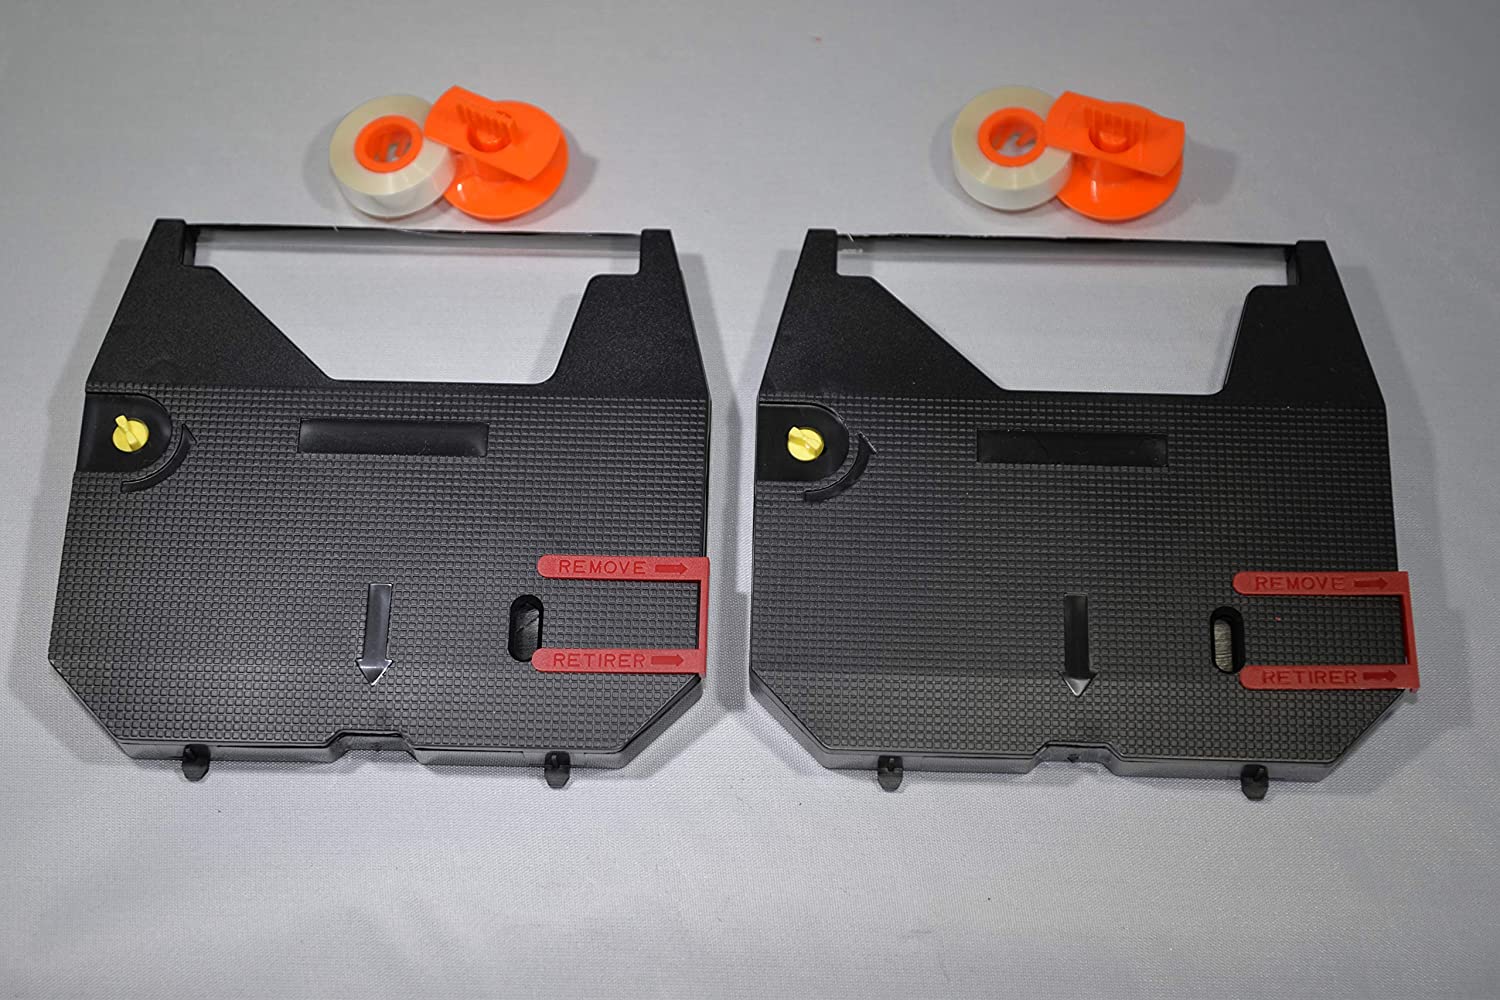 FJA Products cintas de máquina de escribir compatibles y carretes de cinta de corrección para máquinas de escribir Brother  AX15 SX4000 GX6750 Incluye 2 de cada uno color negro